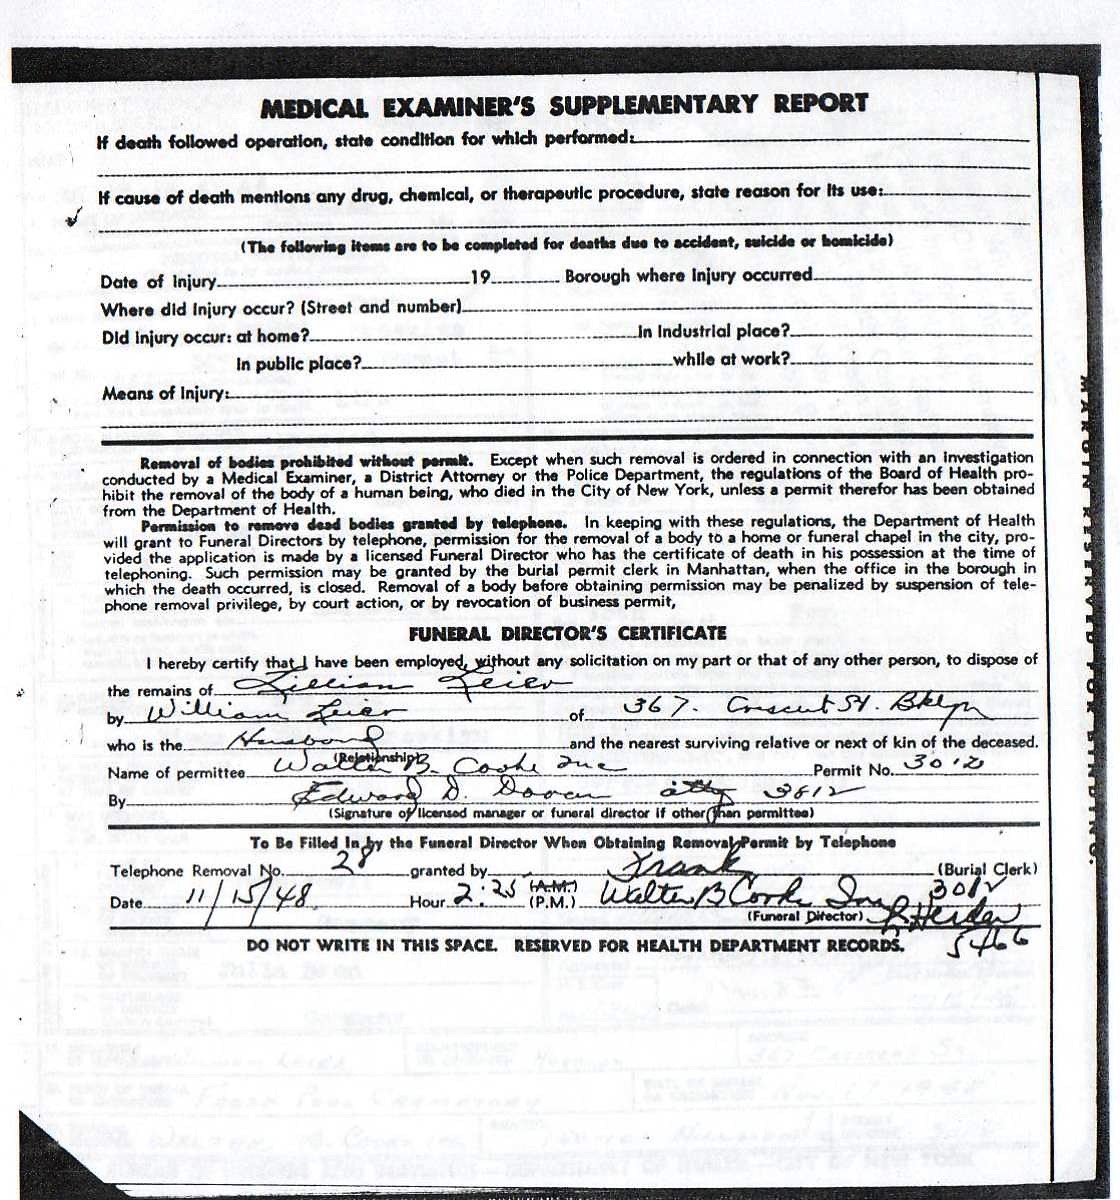 Lillian Fall Leier's Certificate of Death